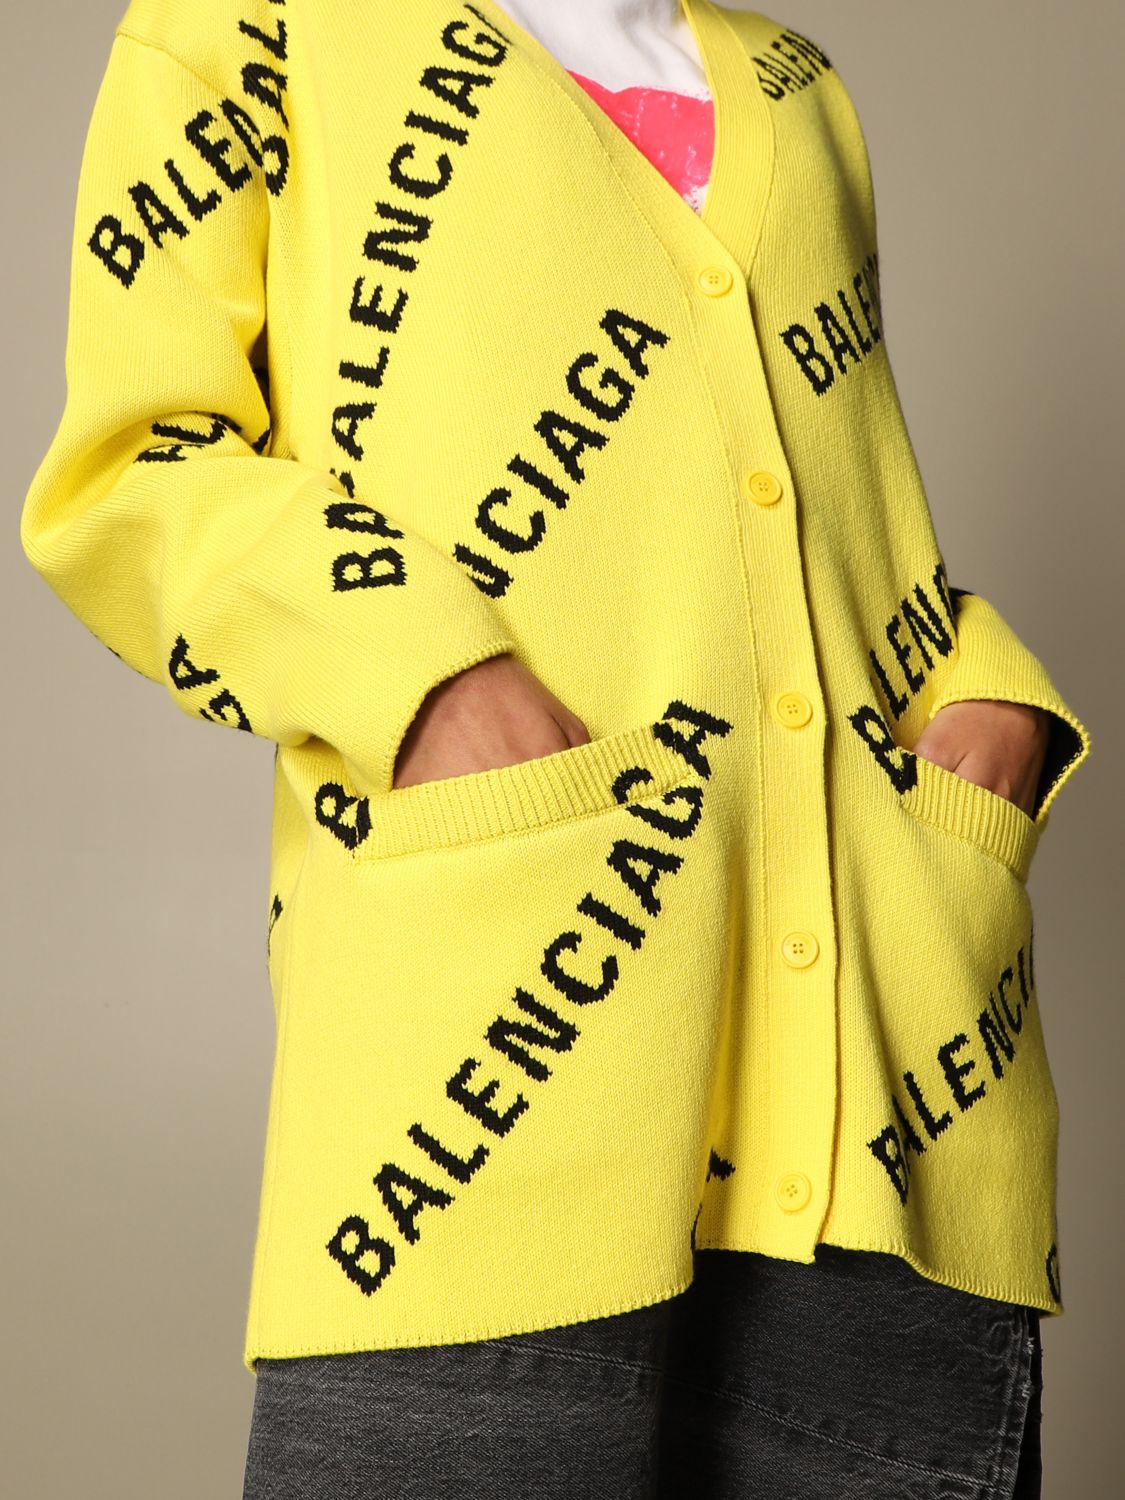 BALENCIAGA: cardigan with all over logo - Yellow | Cardigan Balenciaga ...